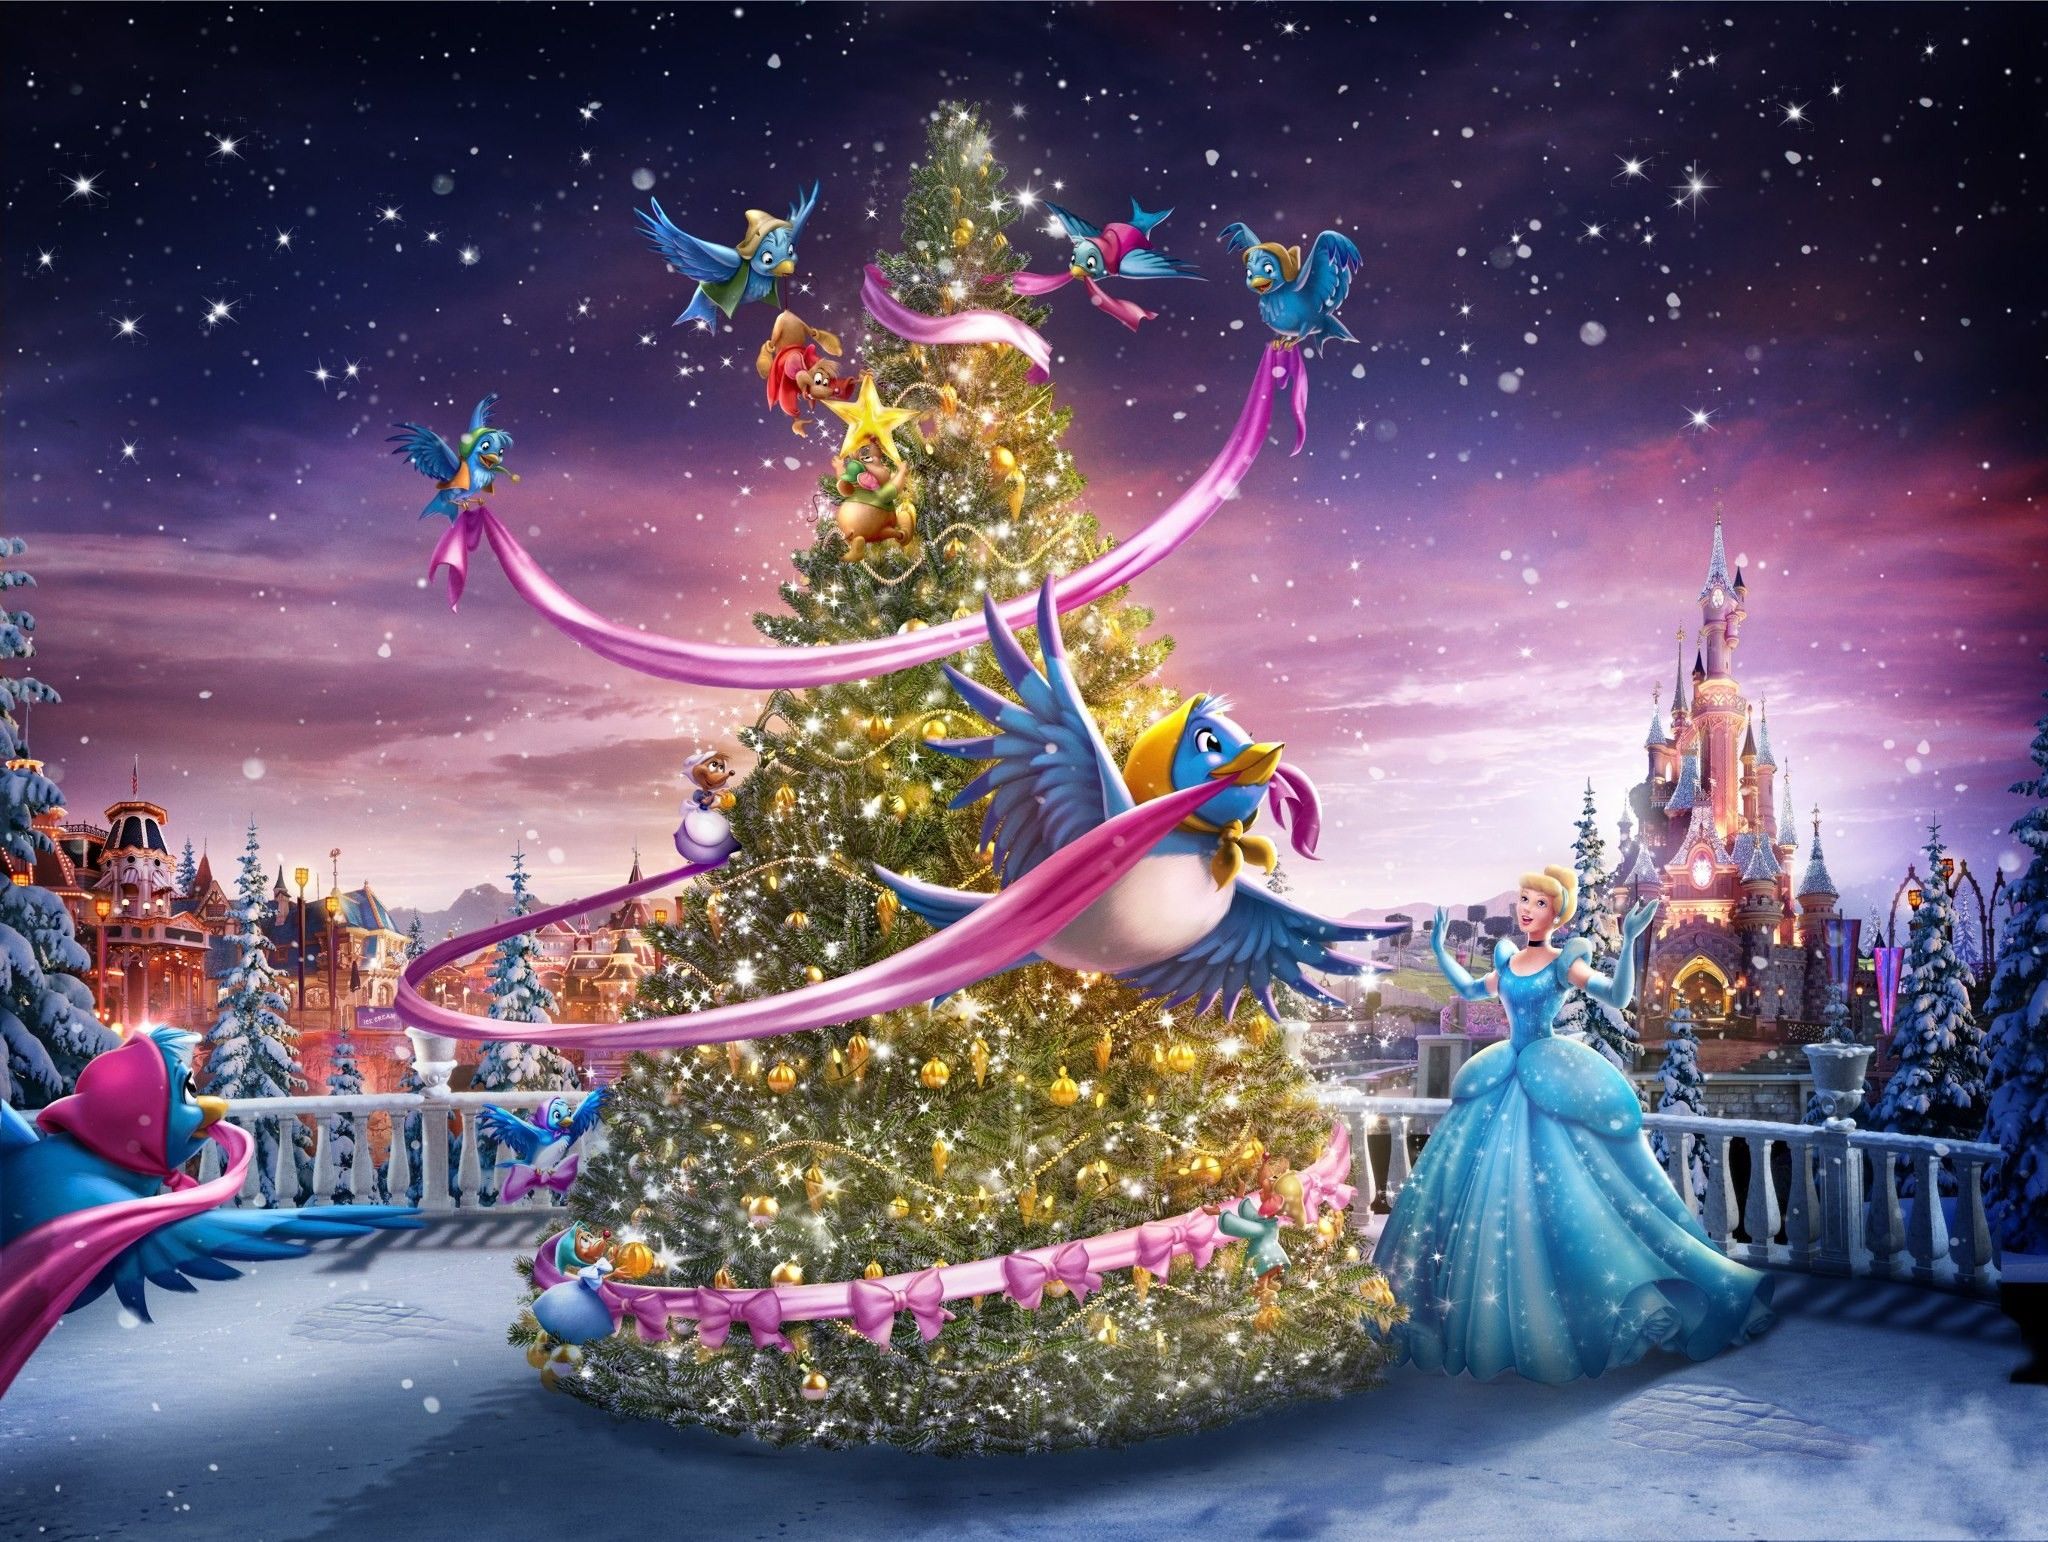 Disney Princess Christmas Characters